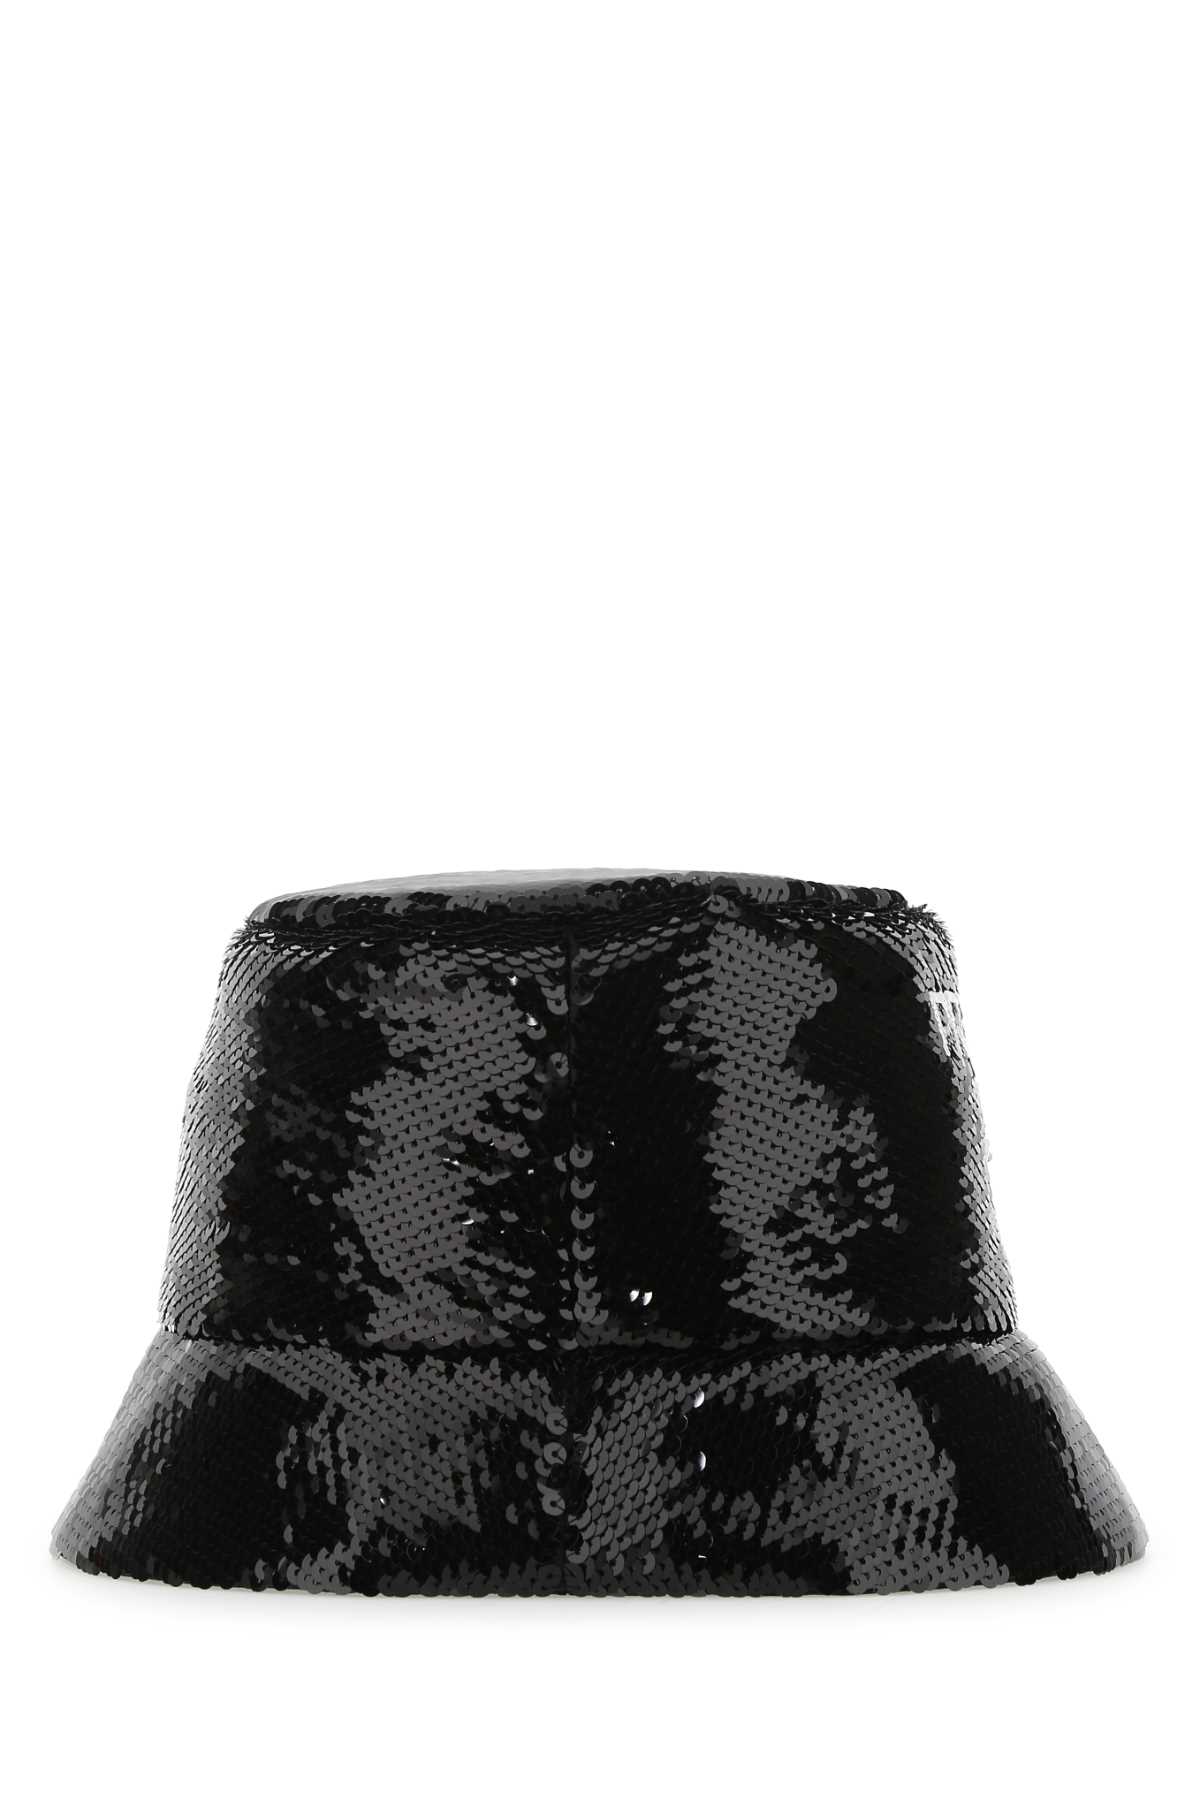 Prada Black Sequins Bucket Hat In F0967